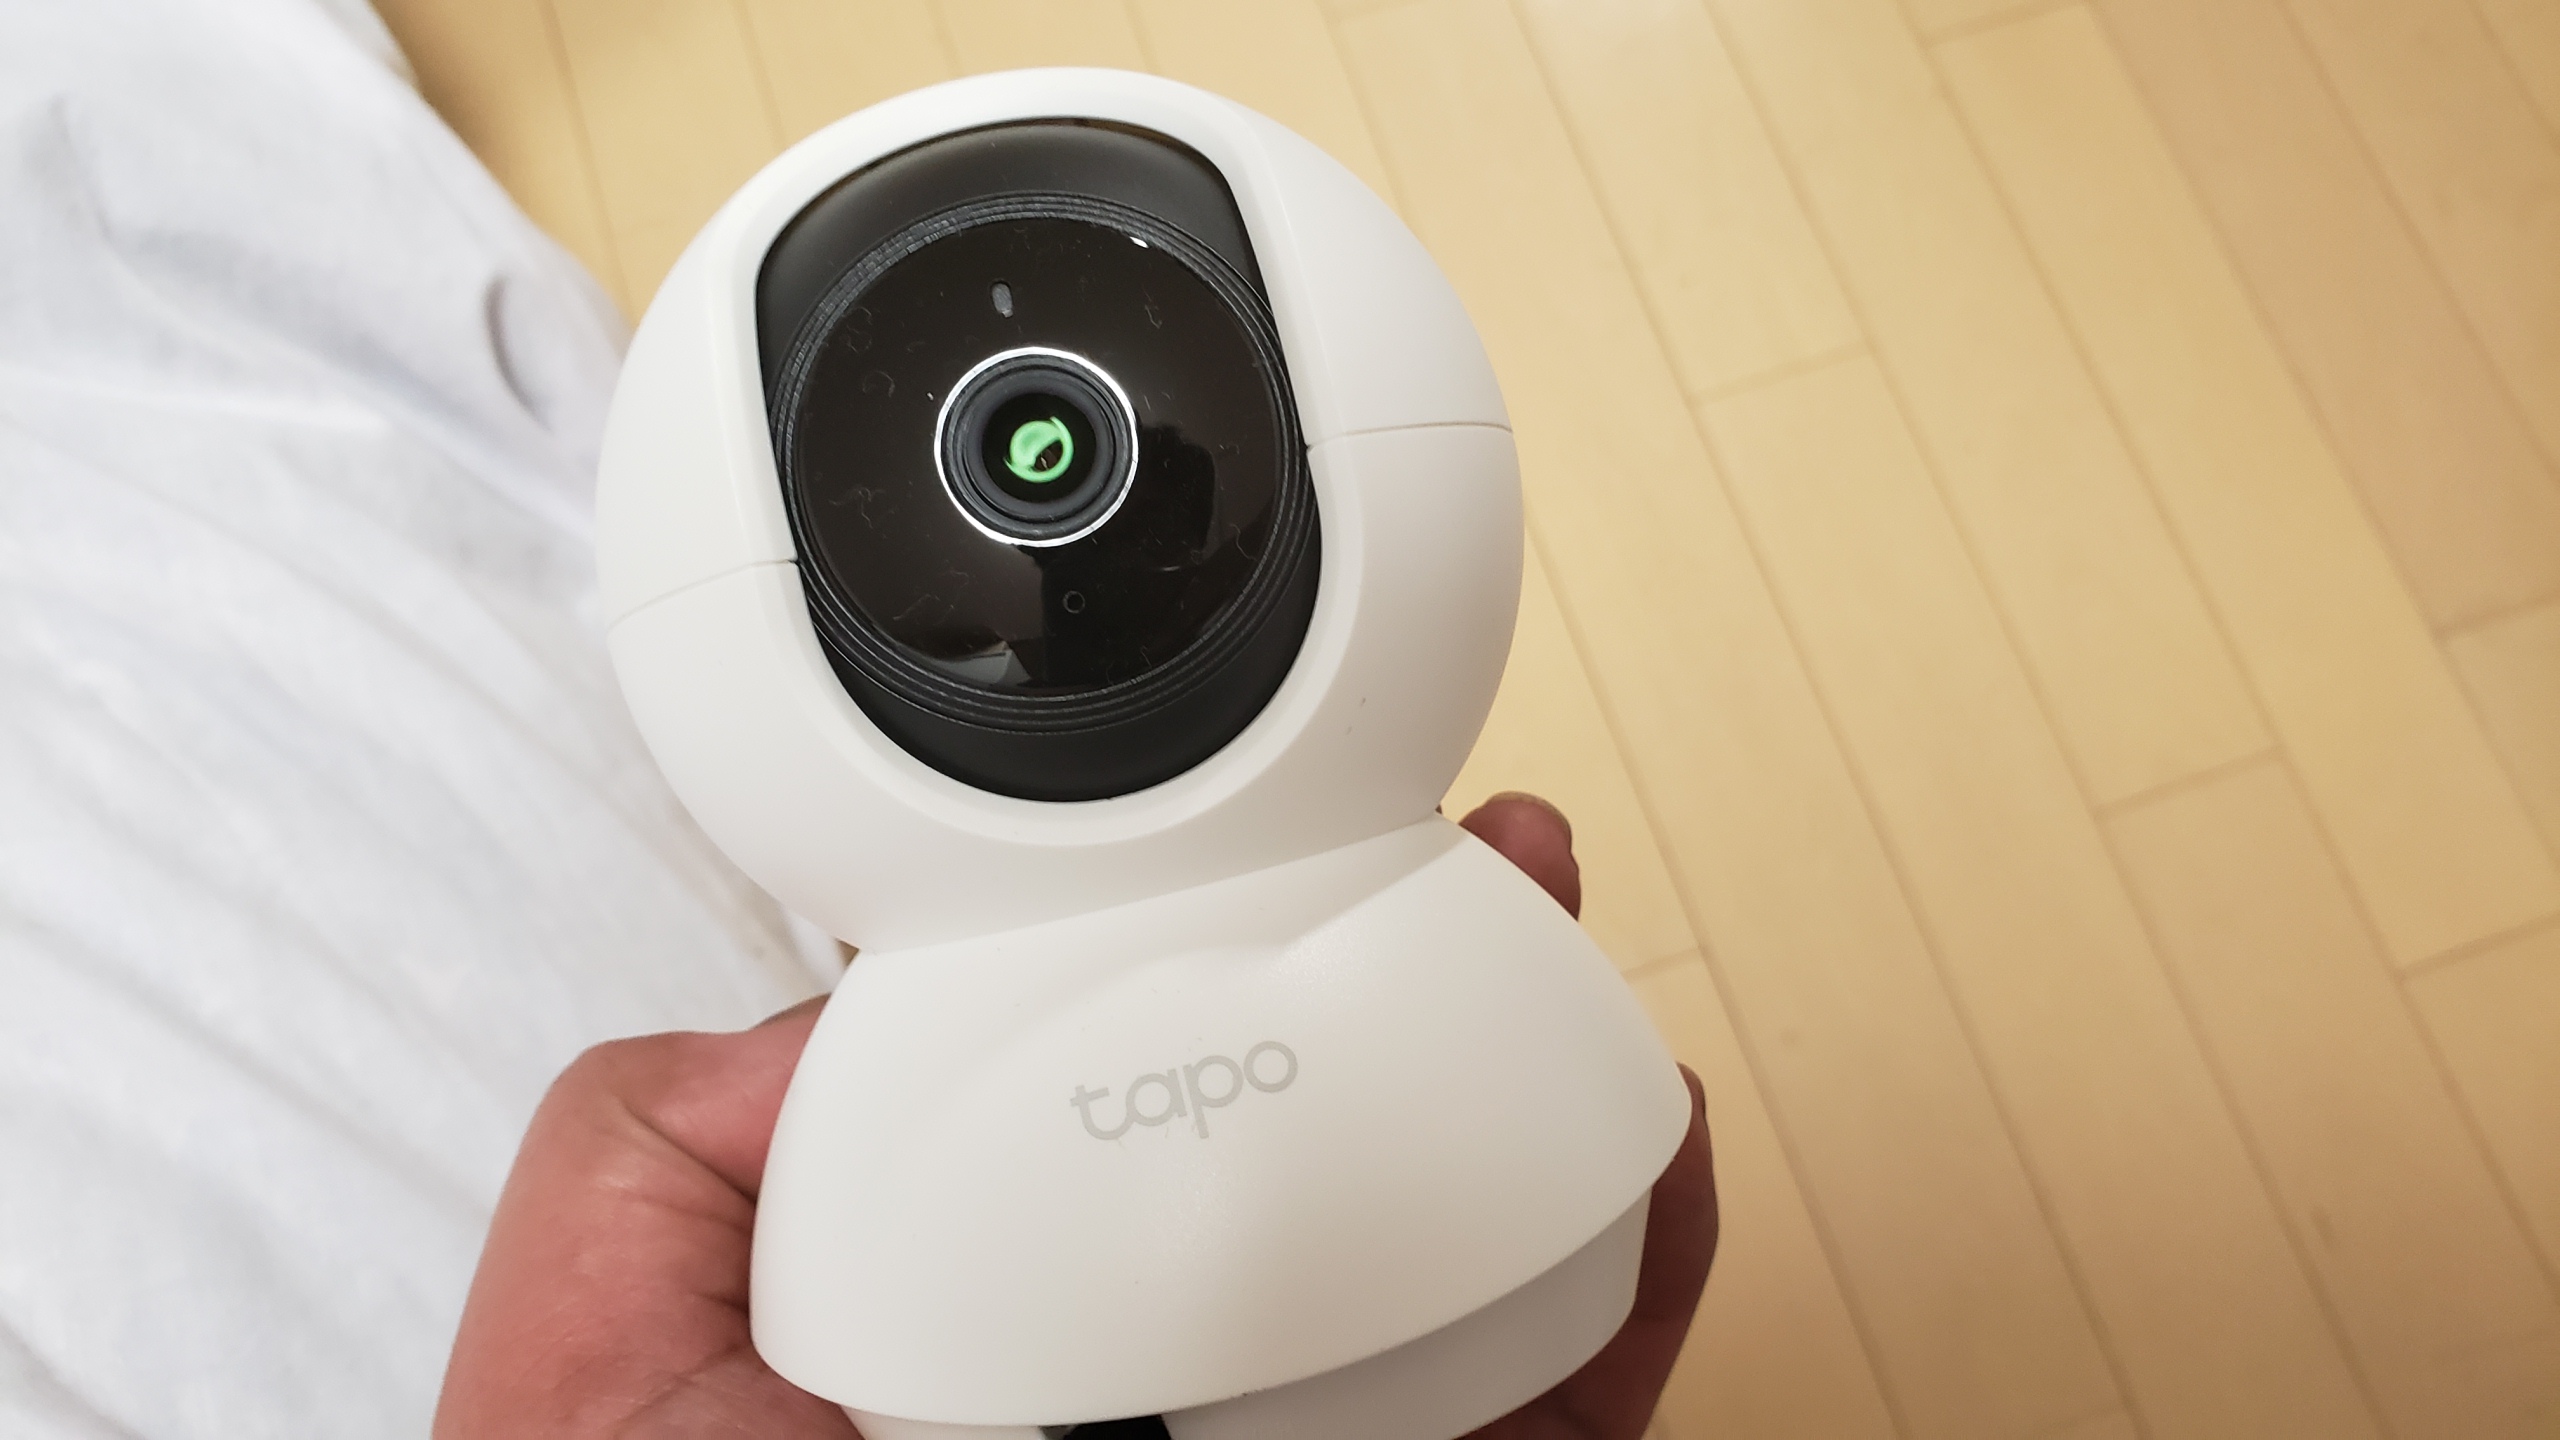 格安監視カメラtapo C200を購入 設定方法や使い方などをレビュー しがないサラリーマンがひっそりと経済的自由をもくろむブログ